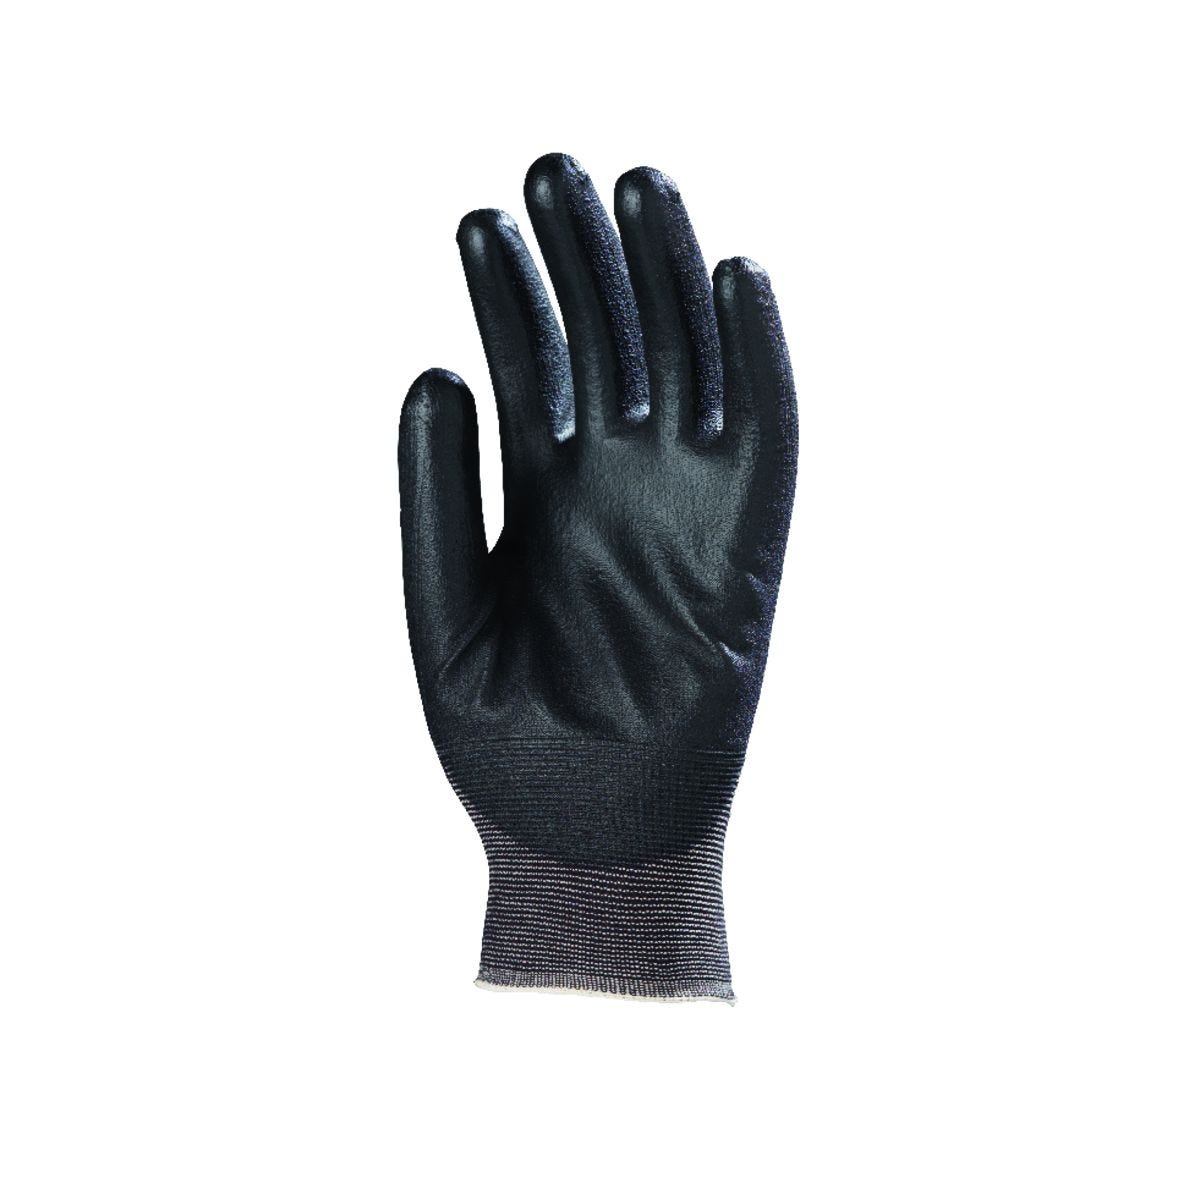 Gants EUROLIGHT nylon noir paume enduite PU noir - COVERGUARD - Taille M-8 1